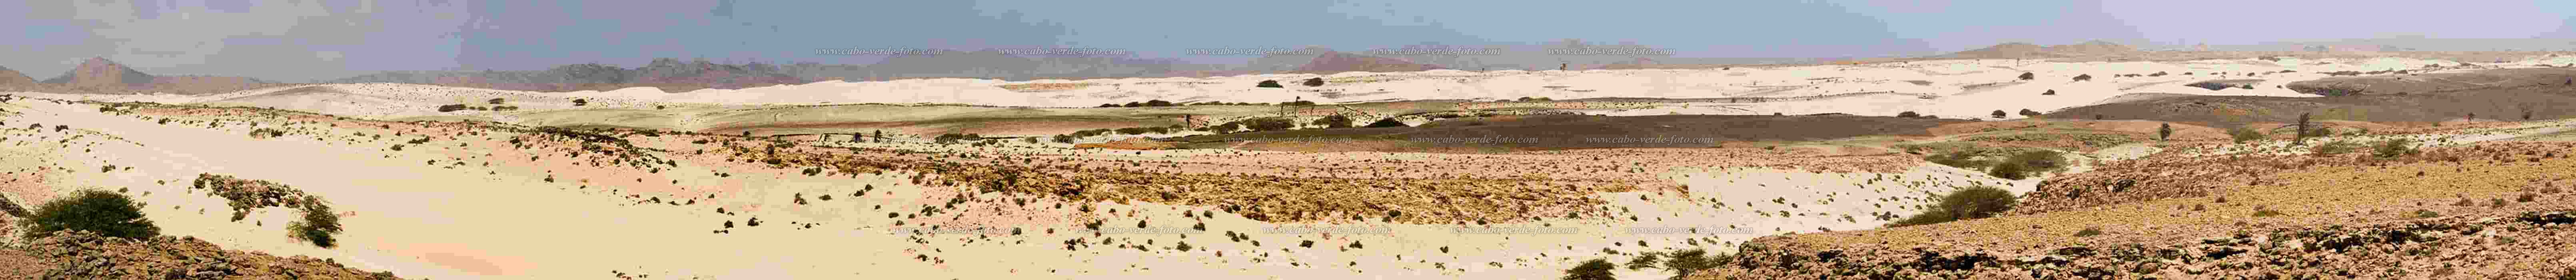 Insel: Boa Vista  Wanderweg:  Ort: Deserto Viana Motiv: Wste Viana Motivgruppe: Landscape Desert © Florian Drmer www.Cabo-Verde-Foto.com